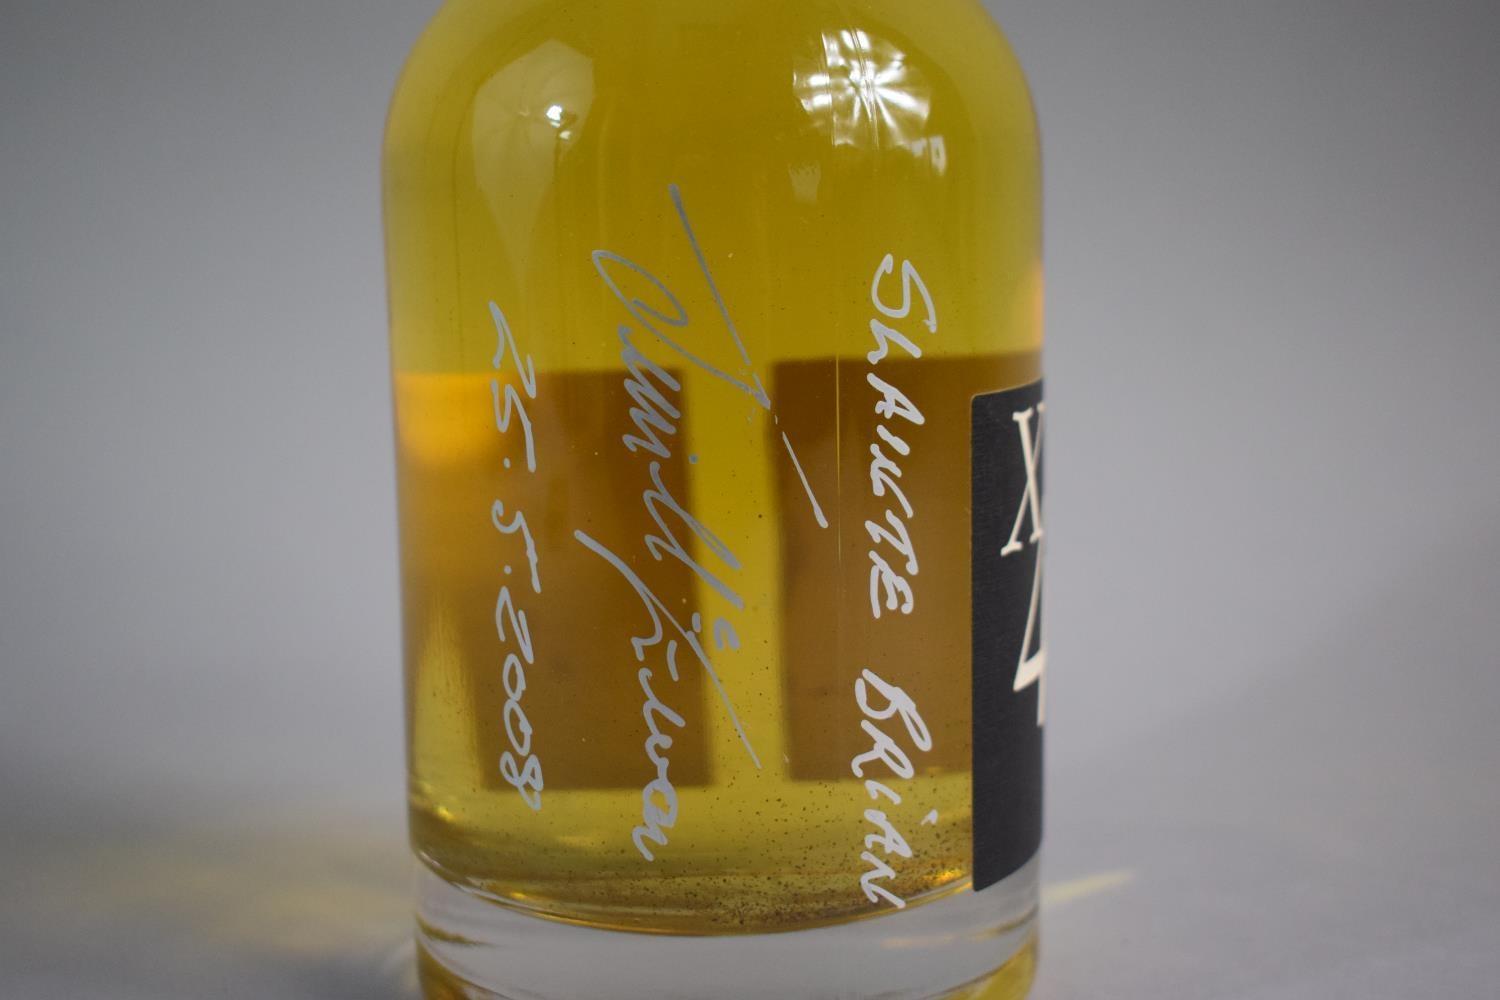 A Single Bottle of Malt Whisky - Bruichladdich Deliverance, Distilled 25/03/2007, Bourbon Cask - Image 3 of 6